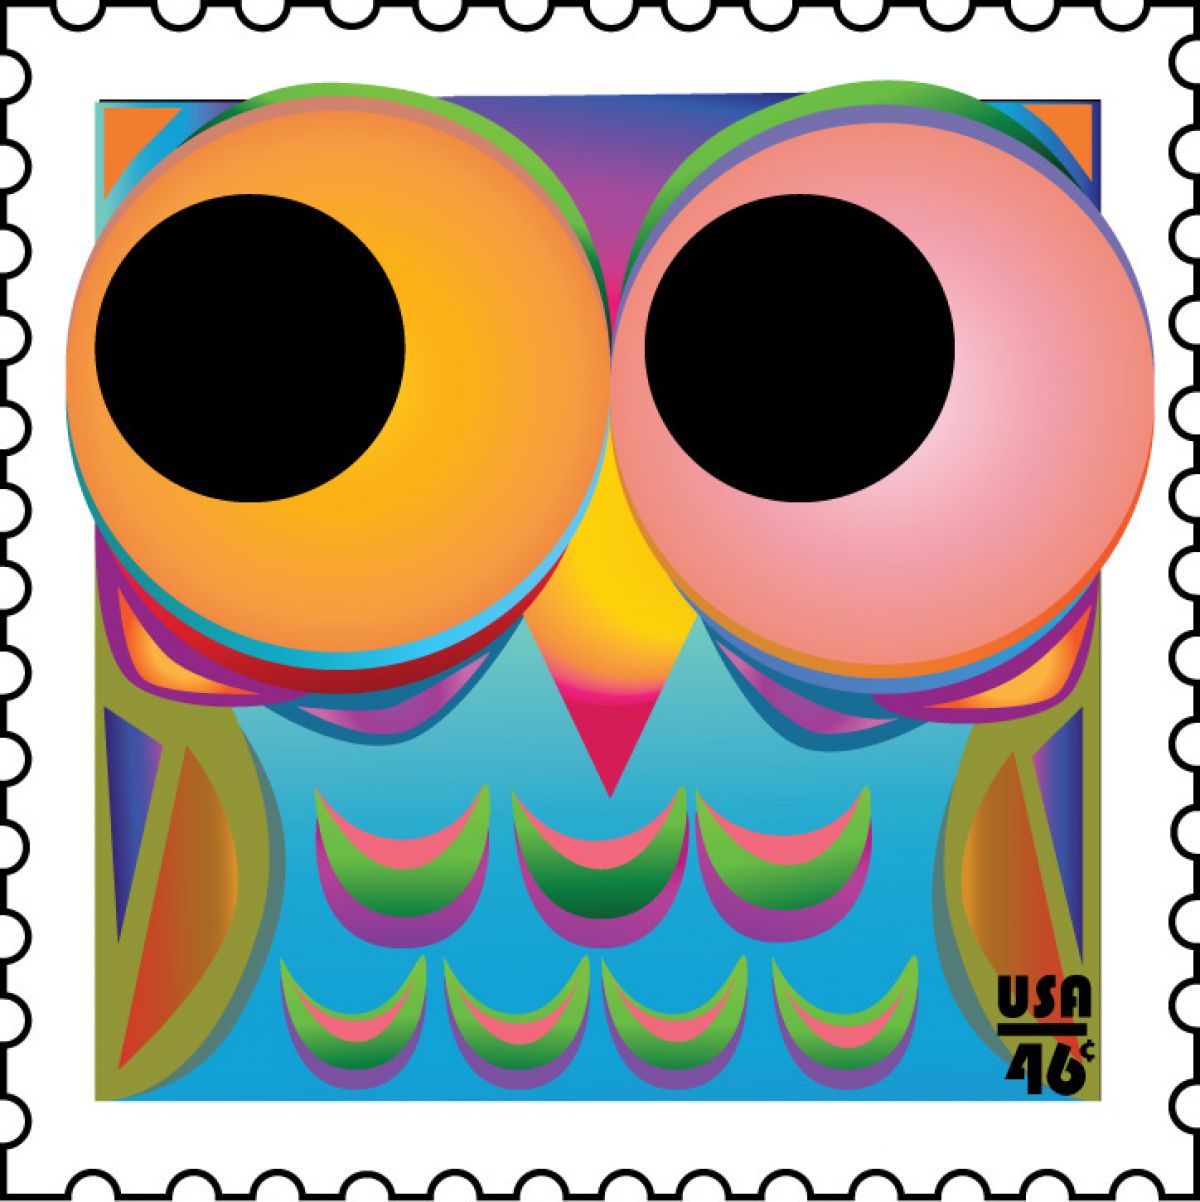 Kayla Kaiser, "Owl Stamp" - 2014, Computer Illustration, 4 3/8 x 4 5/16 in., Aurora Downtown Campus, 2nd floor hallway near 220